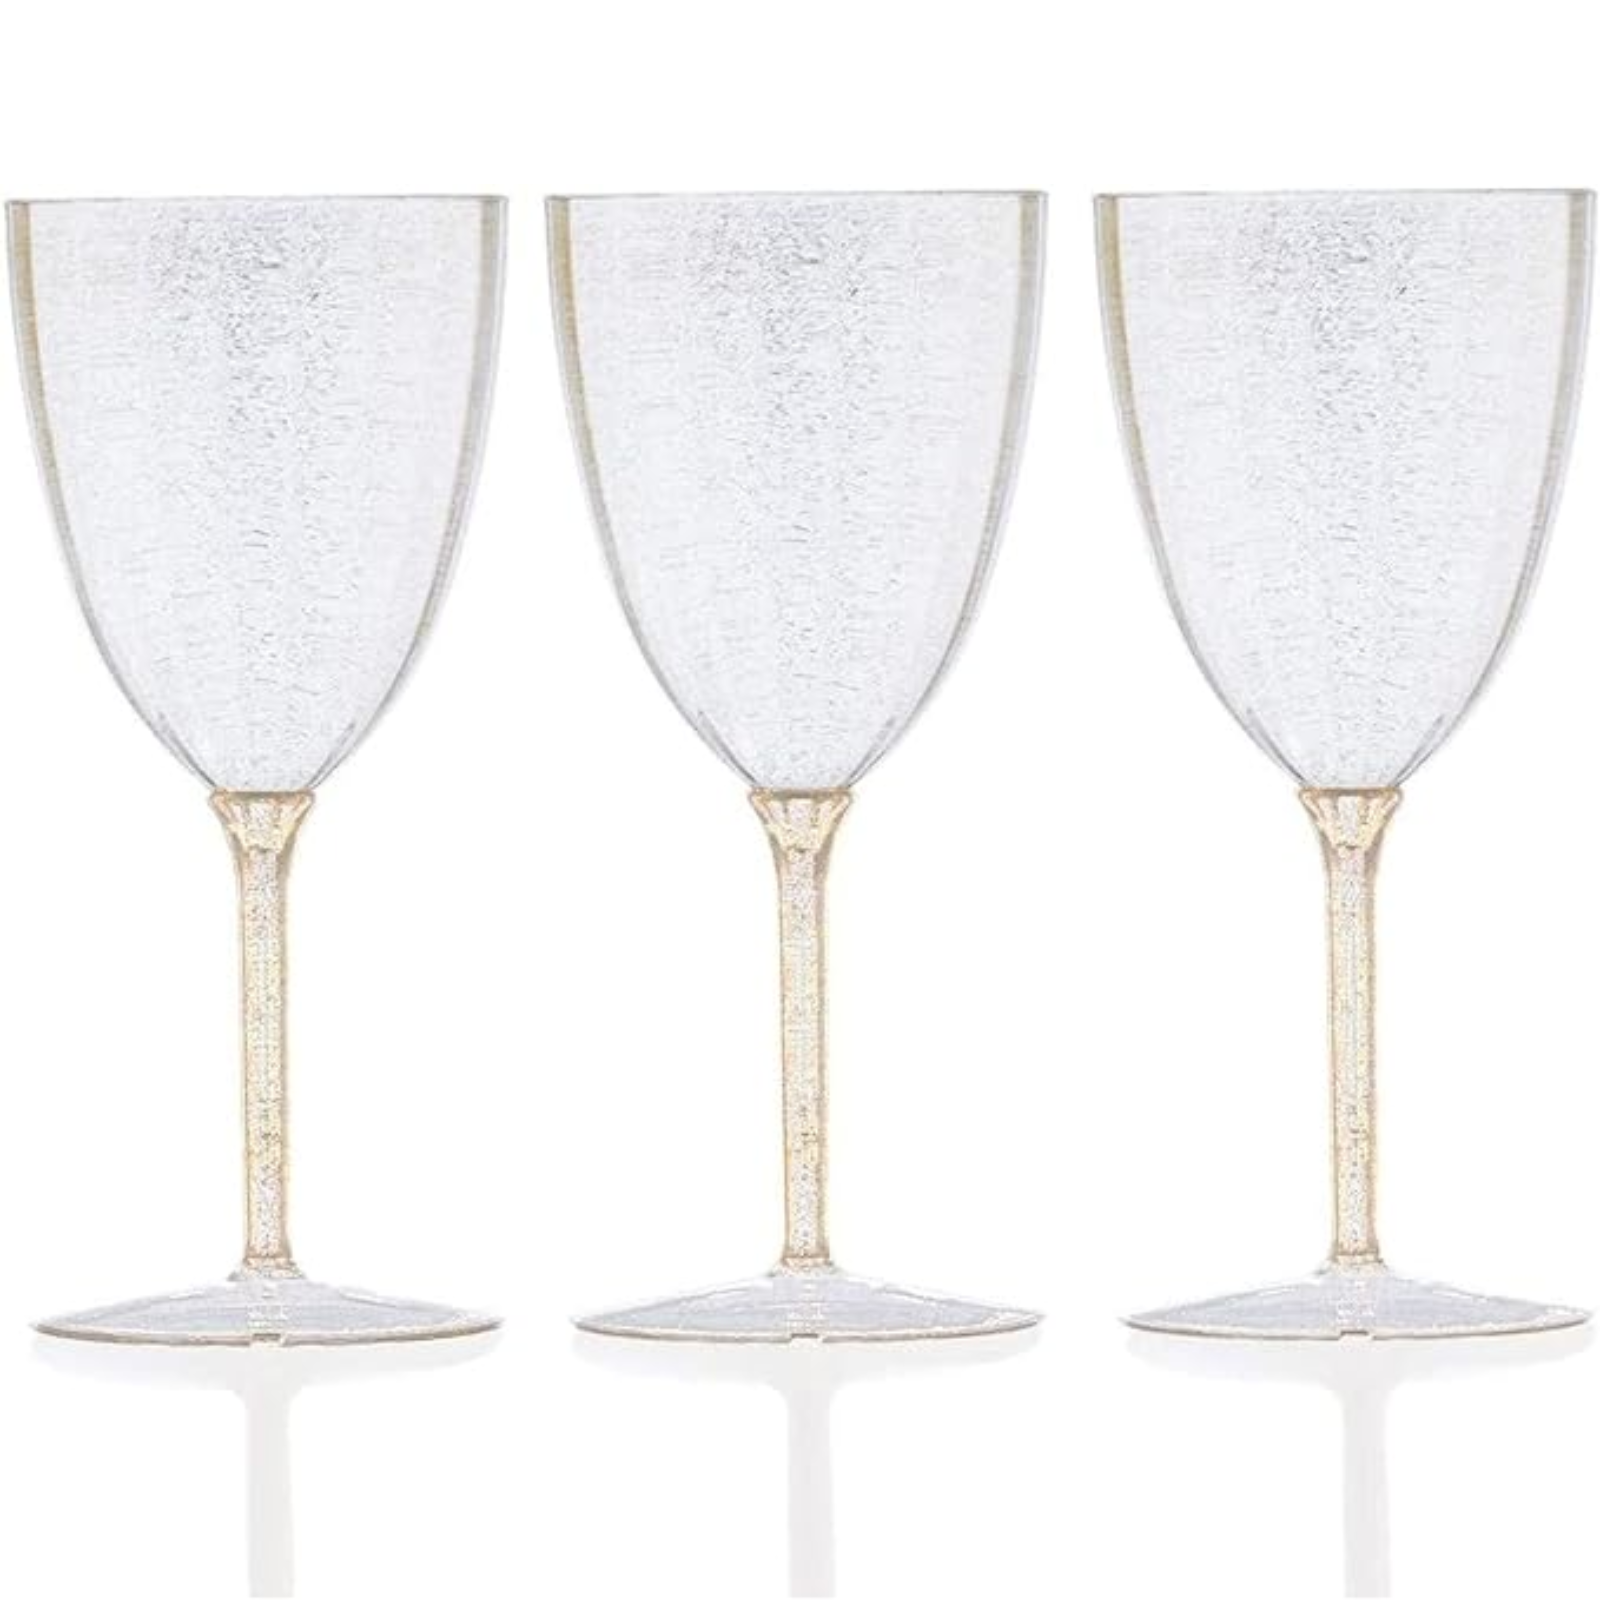 Gold Glitter Disposable Plastic Wine Glasses Goblet 7 oz Cups Nicole Fantini   